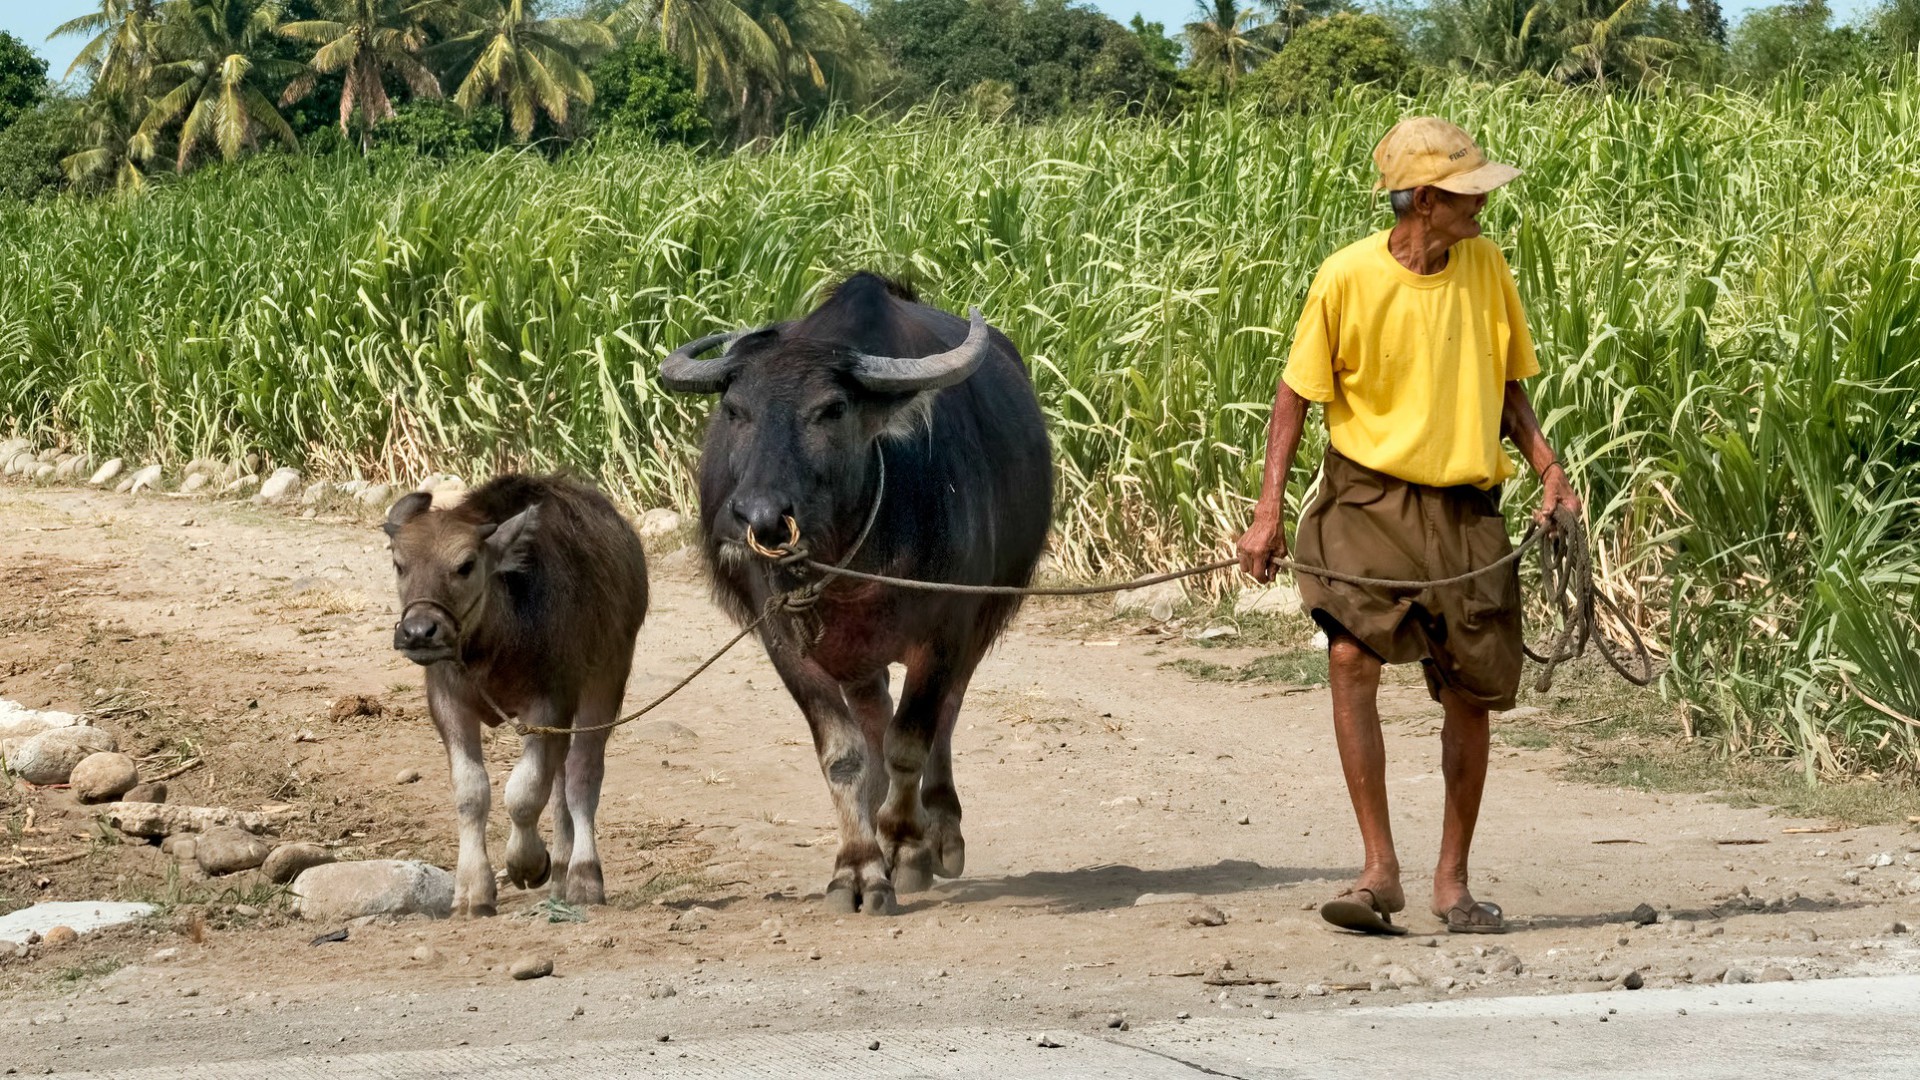 Les paysans de Mindanao sont confrontés à la sécheresse (Photo d'illustration:Brian Evans/Flickr/CC BY-ND 2.0)